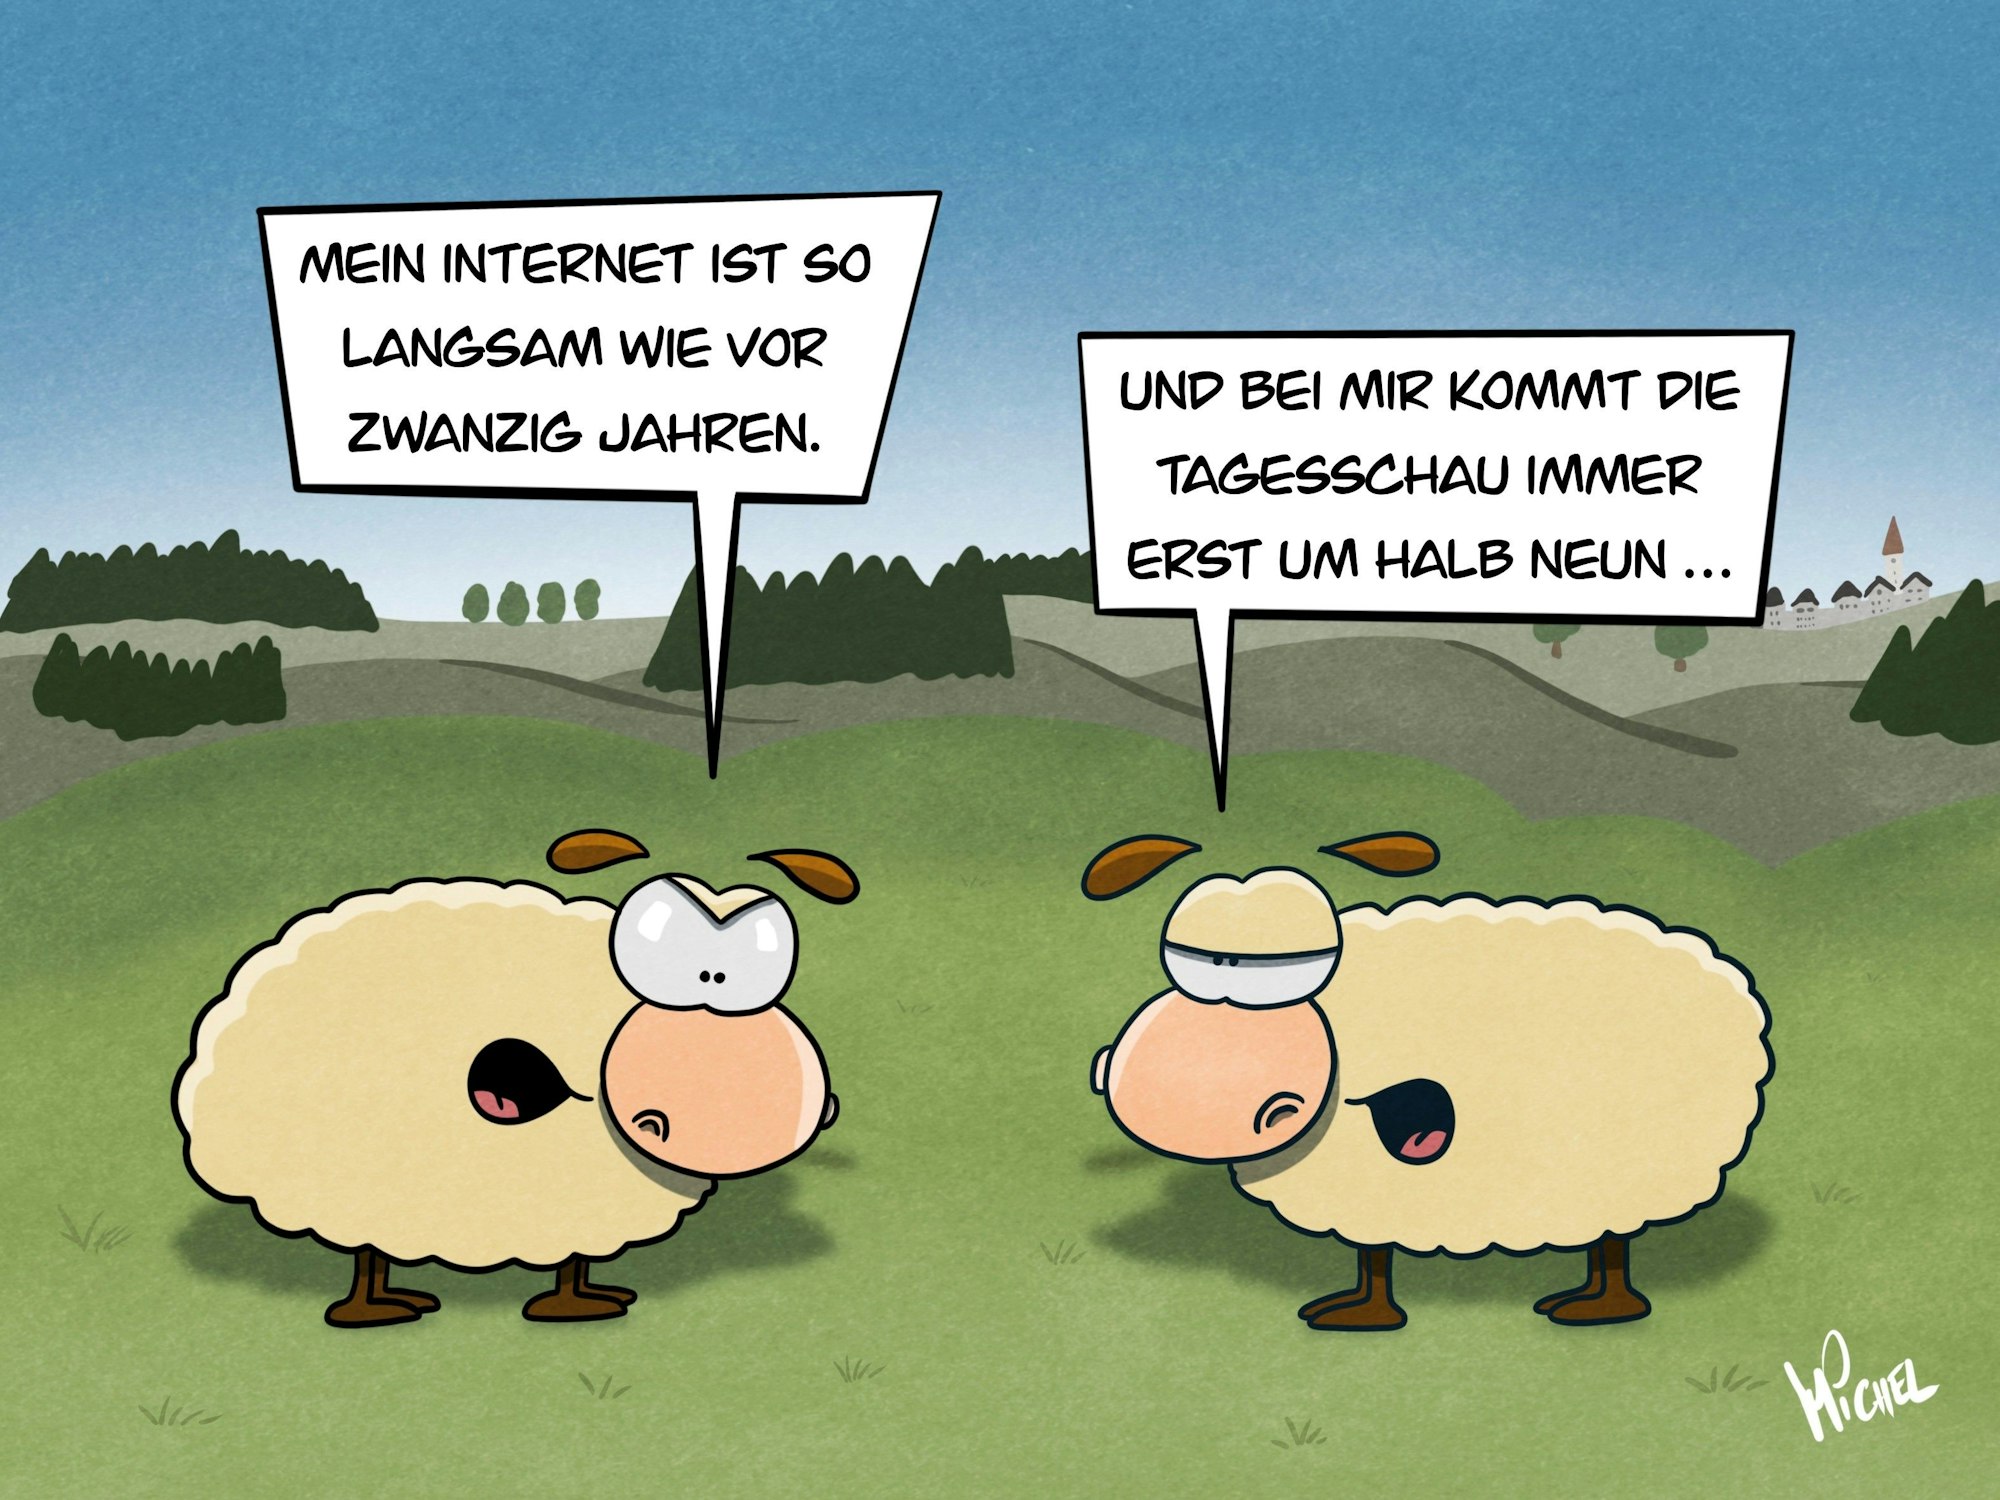 Zwei Schafe auf der Wiese. Das eine sagt: "Mein Internet ist so langsam wie vor 20 Jahren." Das andere erwidert: "Und bei mir kommt die Tagesschau immer erst um halb neun."